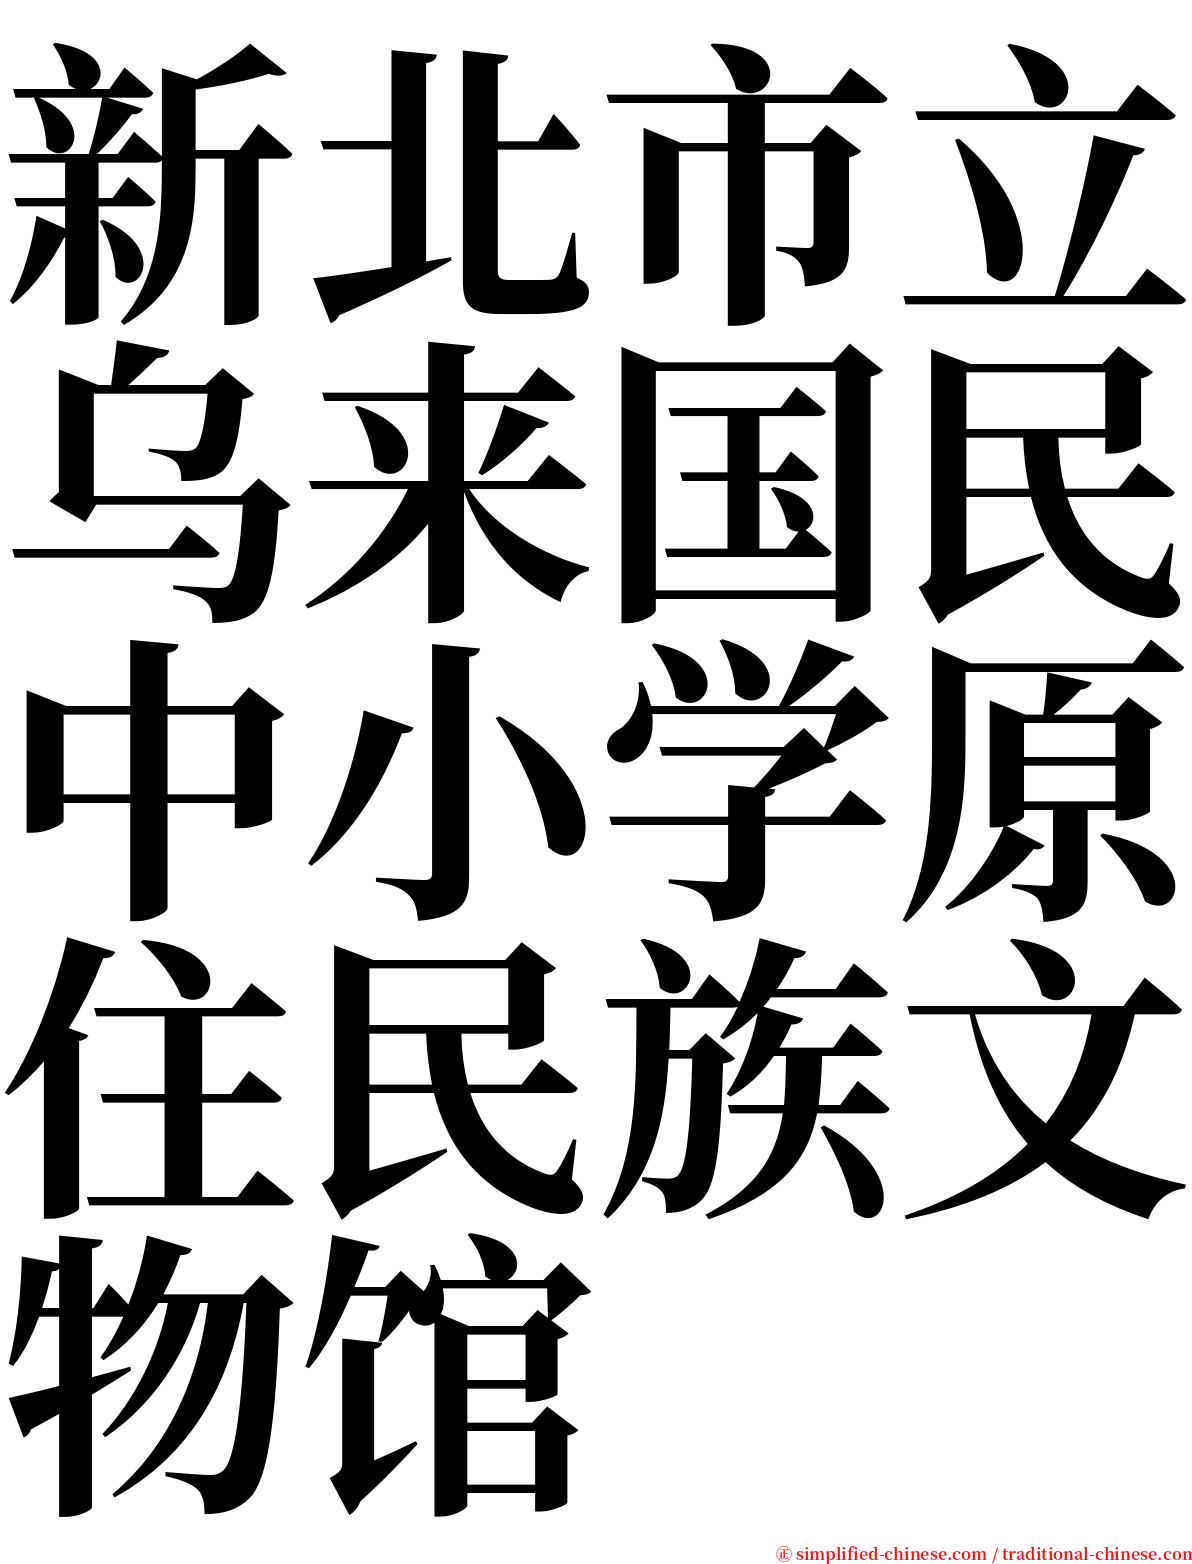 新北市立乌来国民中小学原住民族文物馆 serif font